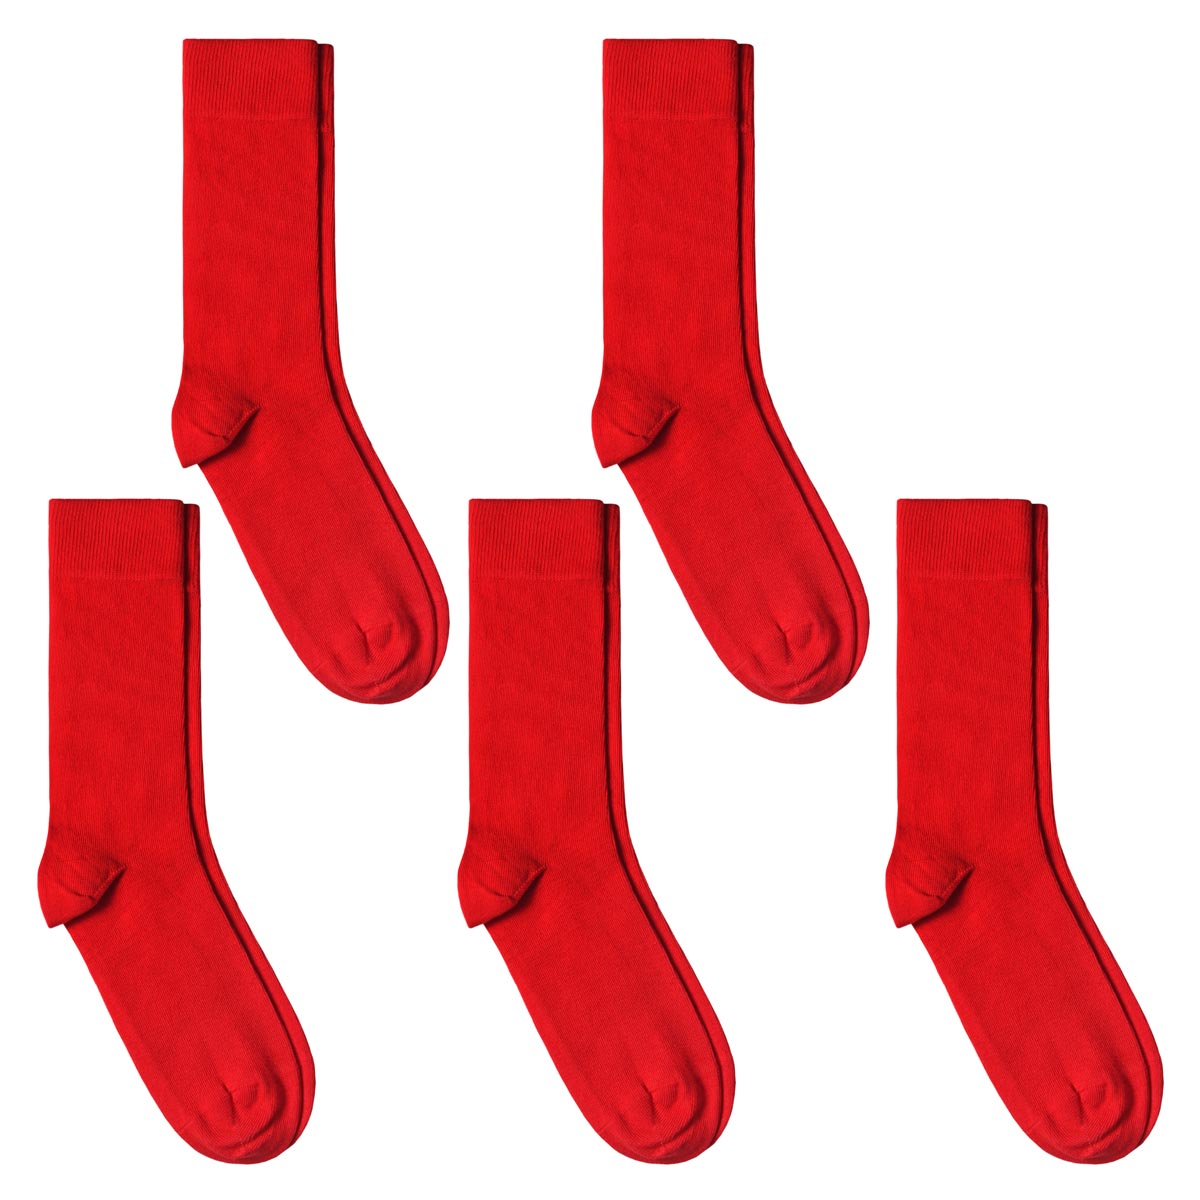 Chaussettes unies (lot de 5) rouges garçon | Algeria Taille 35/38 Couleur  ROUGE BRÉSIL Primary color ROUGE Taille groupée 35/38